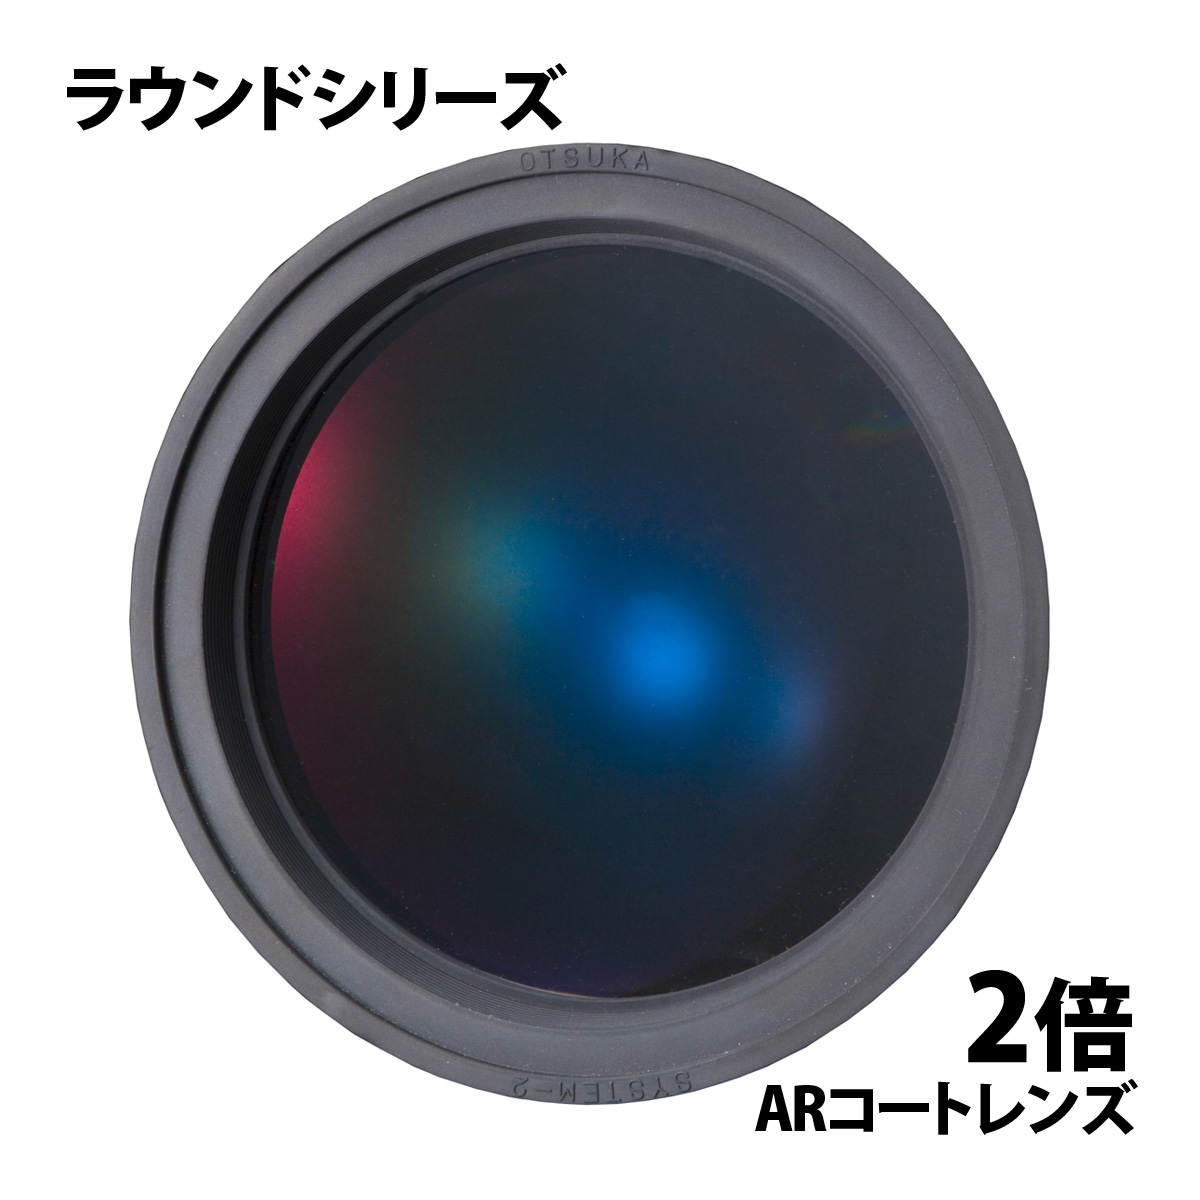 オーツカ光学 交換レンズ(3X・ENV DLKと共通) SKK-L-3